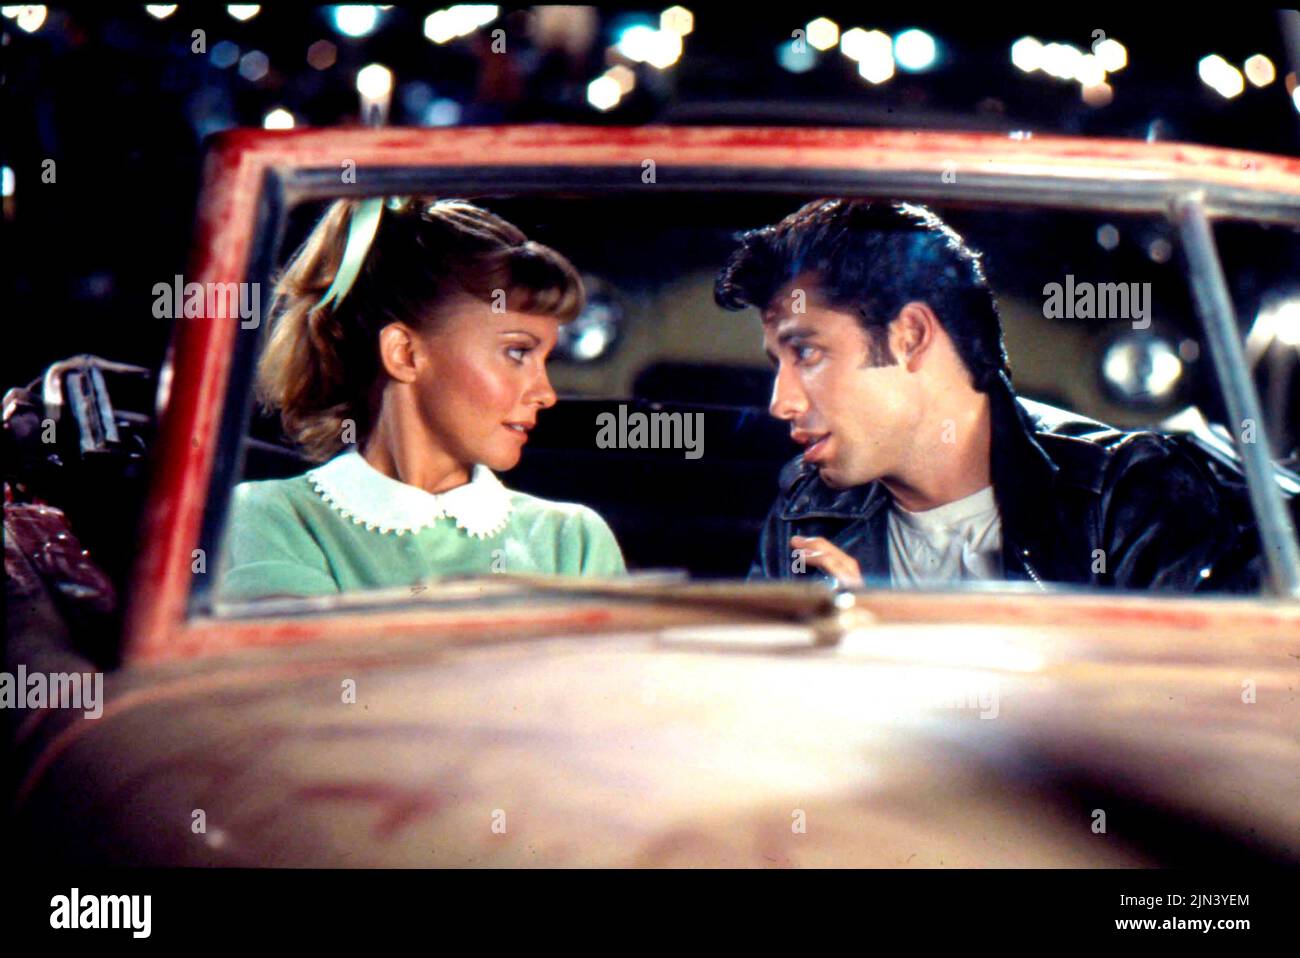 1977, Hollywood, Californie, Etats-Unis: Acteurs OLIVIA NEWTON-JOHN comme Sandy et JOHN TRAVOLTA comme Danny dans le film 'Grease'. (Image de crédit : © Paramount/Entertainment Pictures) Banque D'Images